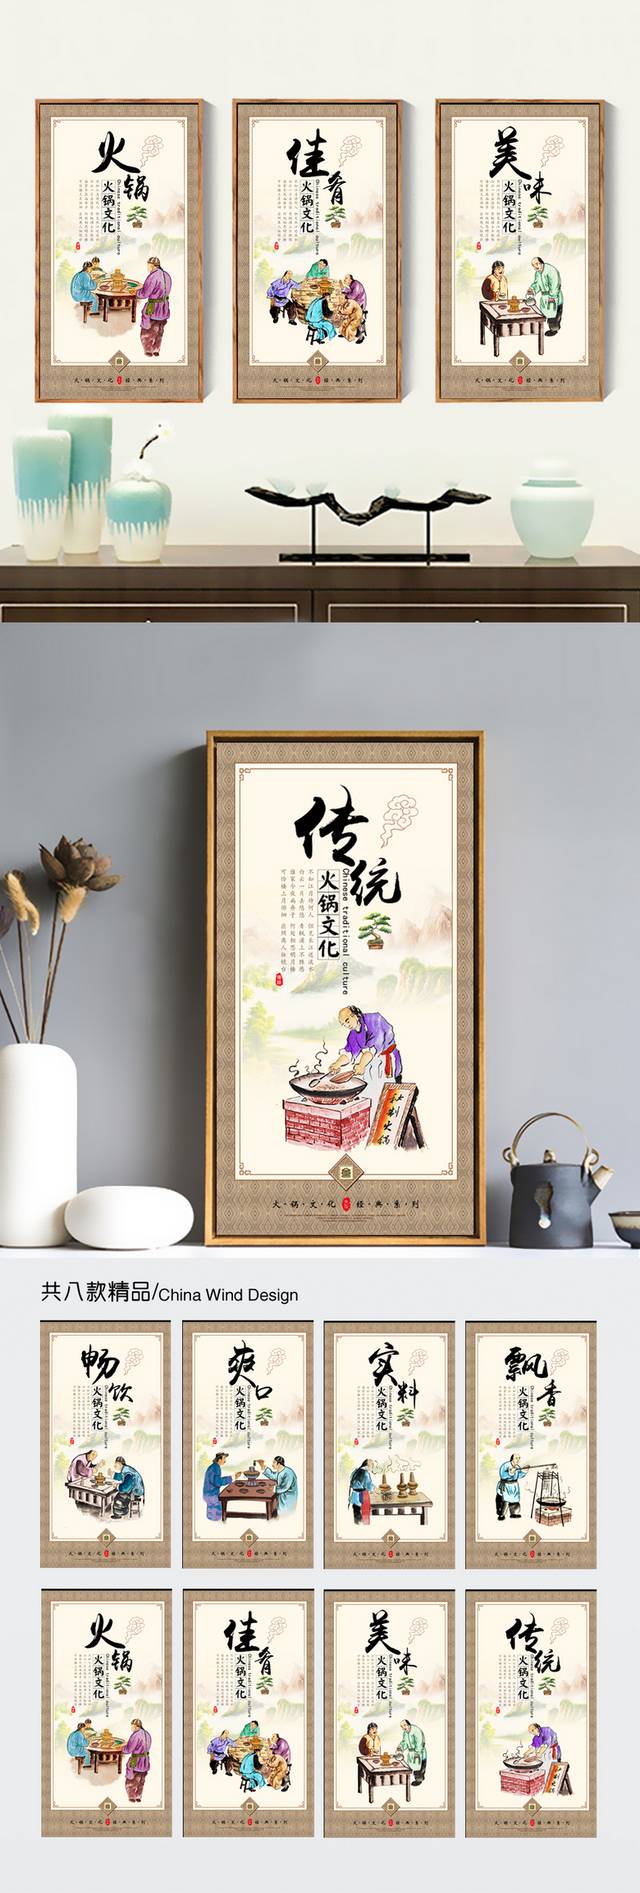 火锅文化宣传图片设计